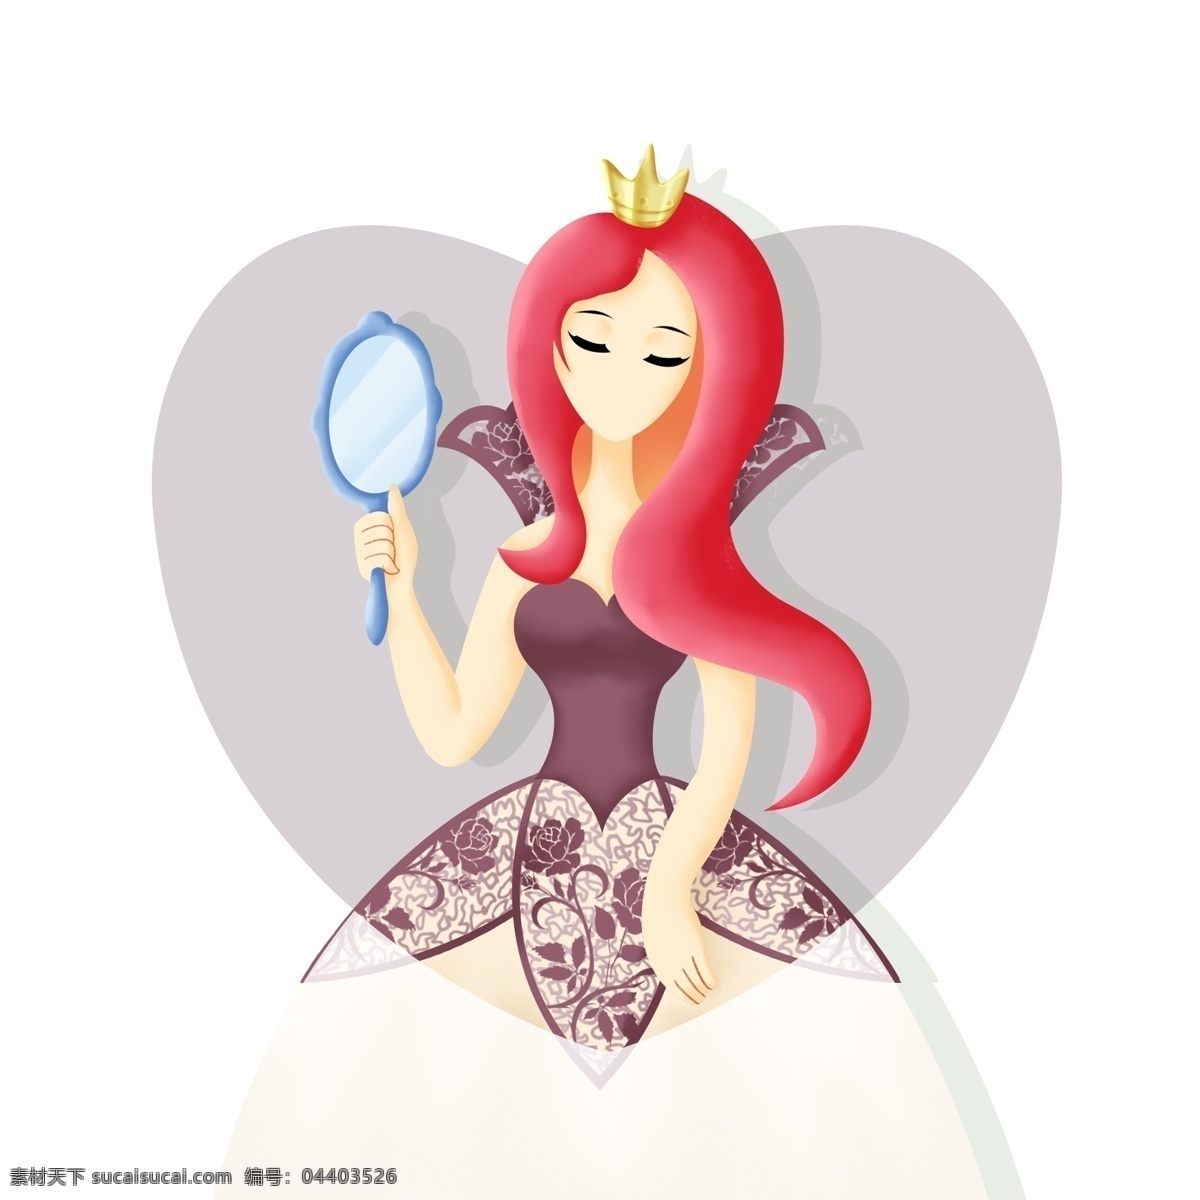 卡通 三 八 女王 节 妇女节 镜子 红 发 形象 卡通女王 三八 女王节 红发 女王形象